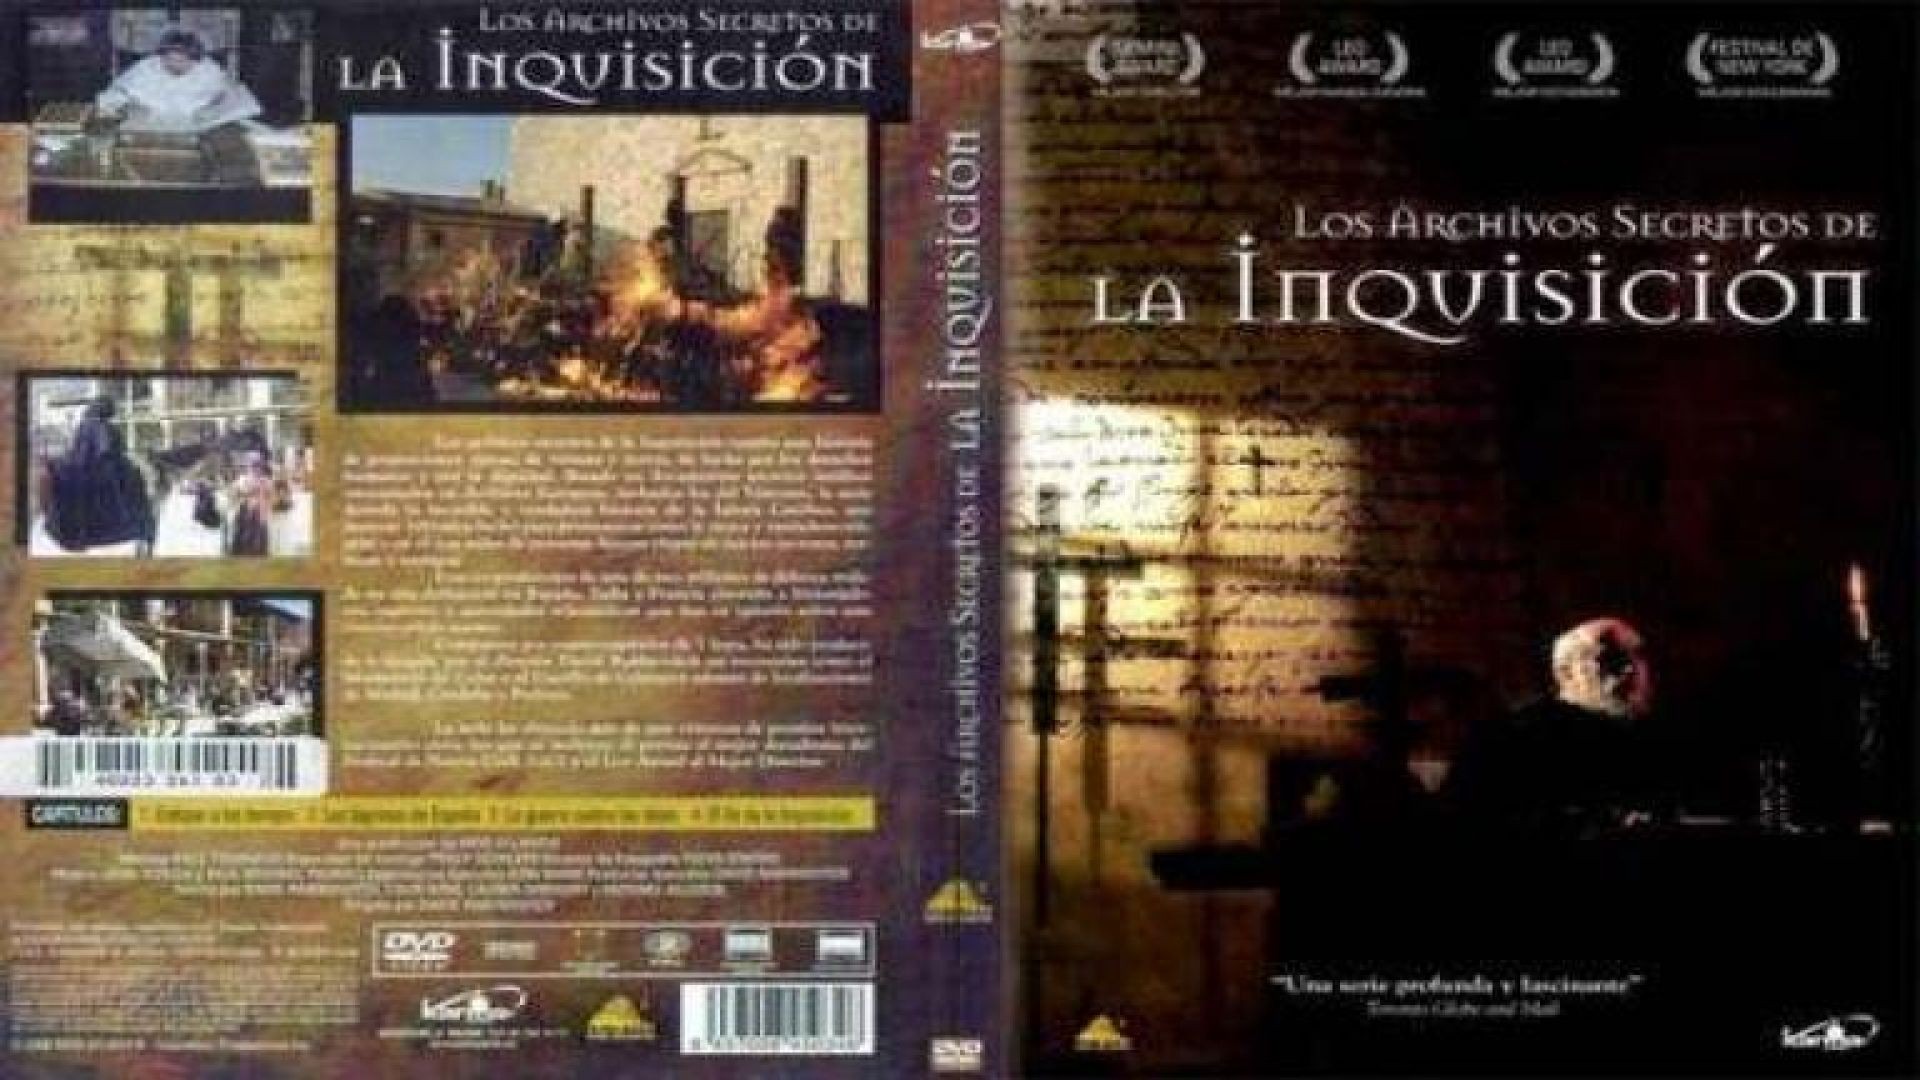 2/4 Los Archivos Secretos de la Inquisicion | Las Lagrimas de España - Santa Inquisicion